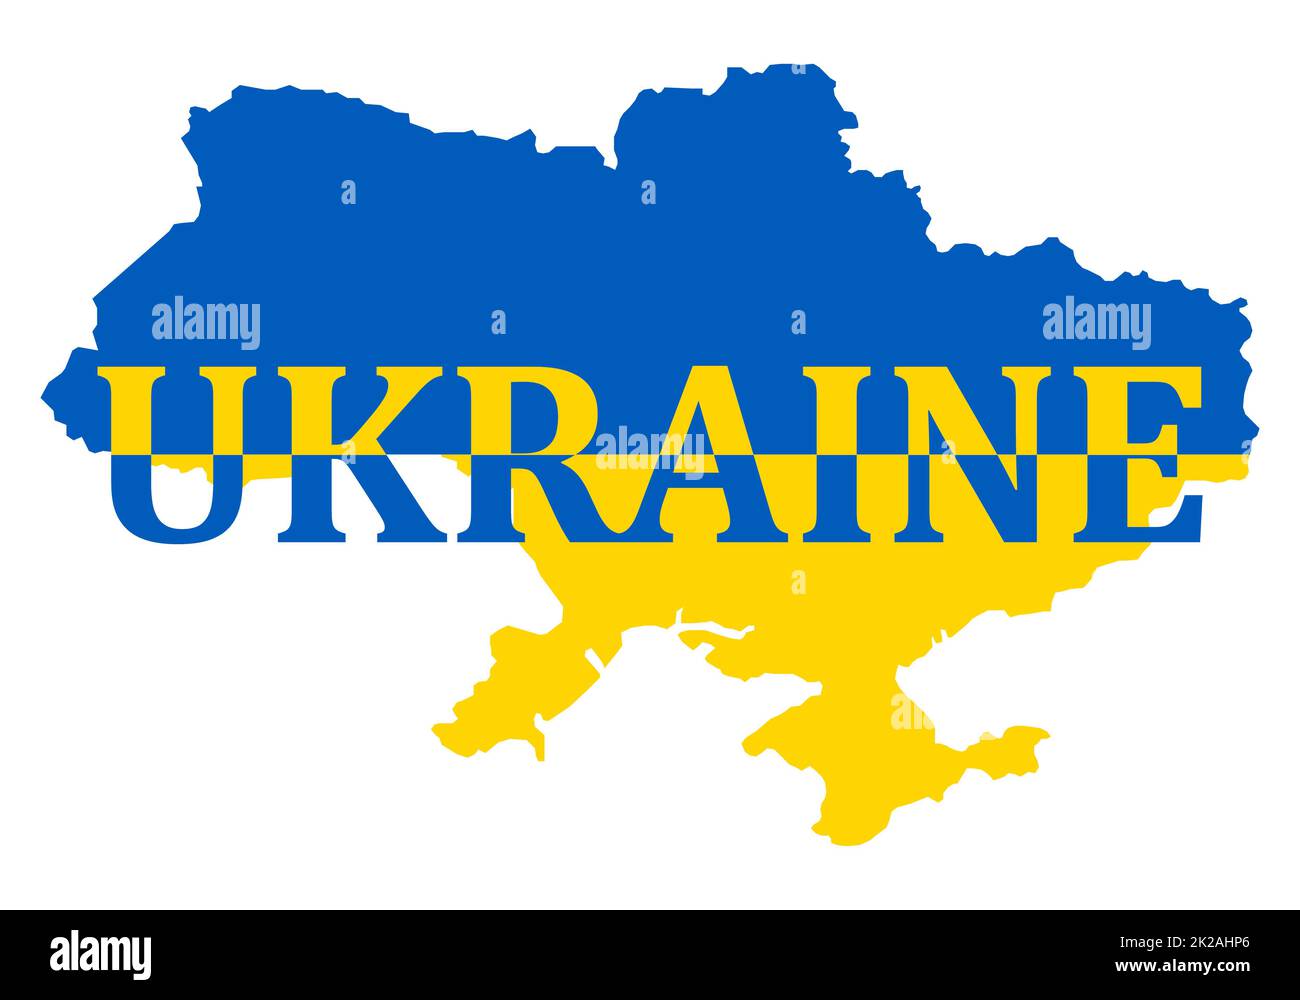 Illustrazione vettoriale della bandiera incorporata nella carta dell'Ucraina con testo. Concetto ucraino banner per la protesta internazionale, e fermare la guerra contro l'Ucraina e l'invasione sul suo territorio. Foto Stock